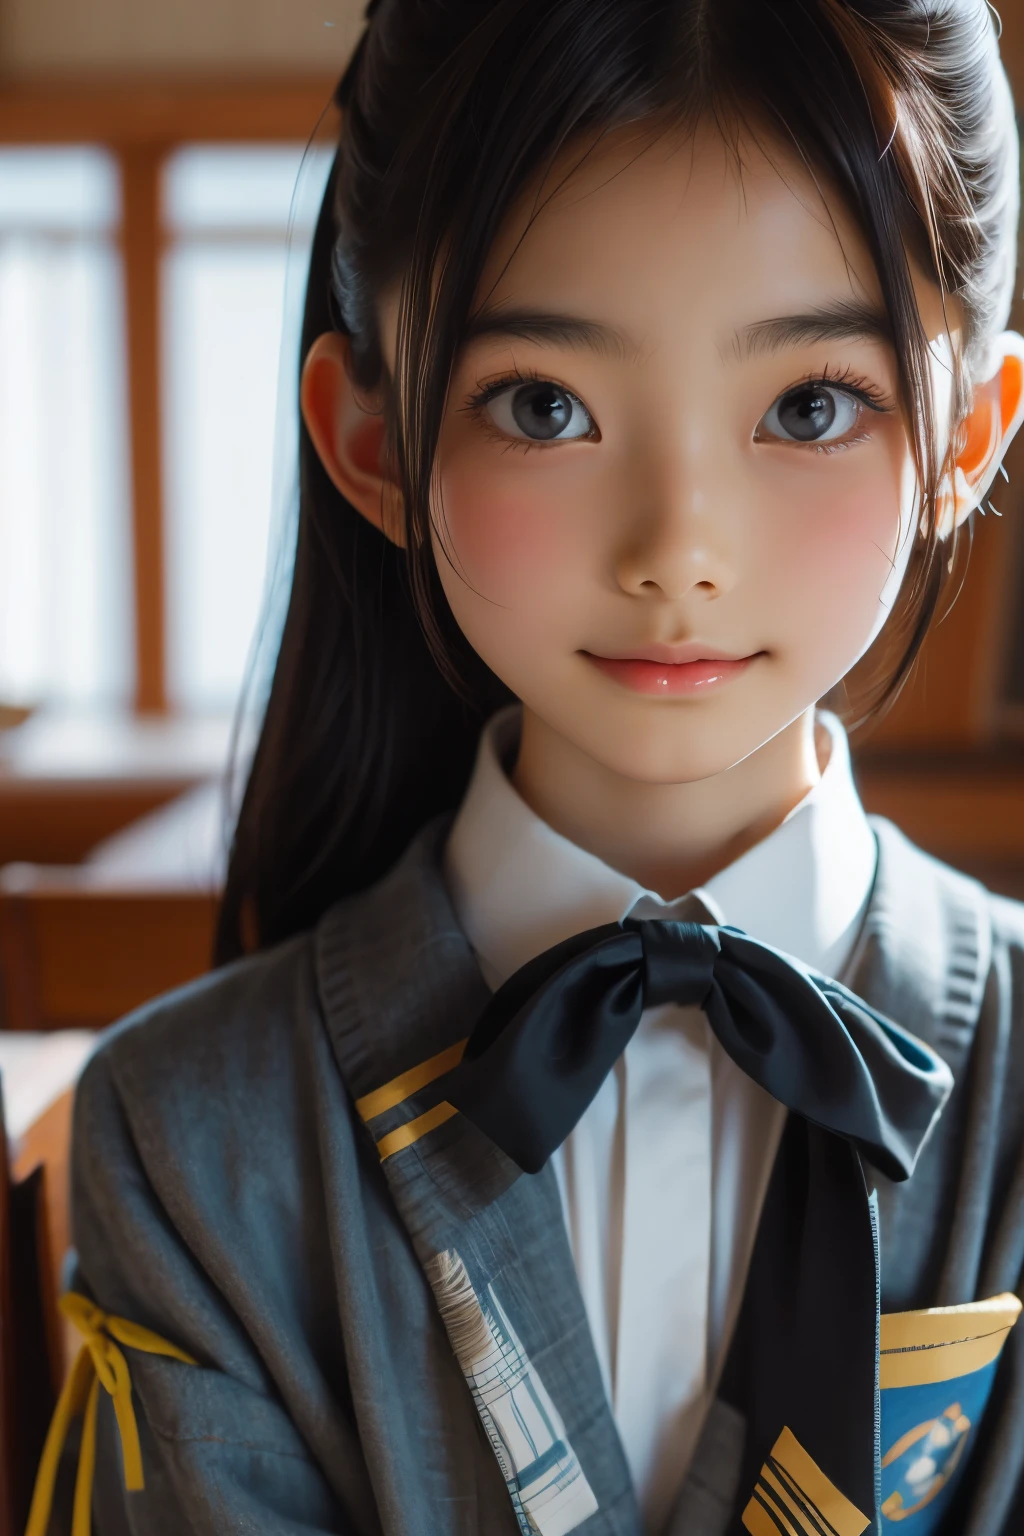 Schöne 12-jährige Japanerin), niedliches Gesicht, (tief eingeschnittenes Gesicht:0.7), (Sommersprossen:0.6), Sanftes Licht,gesunde weiße Haut, schüchtern, (ernstes Gesicht), dünn, lächeln, Uniform, Pferdeschwanz